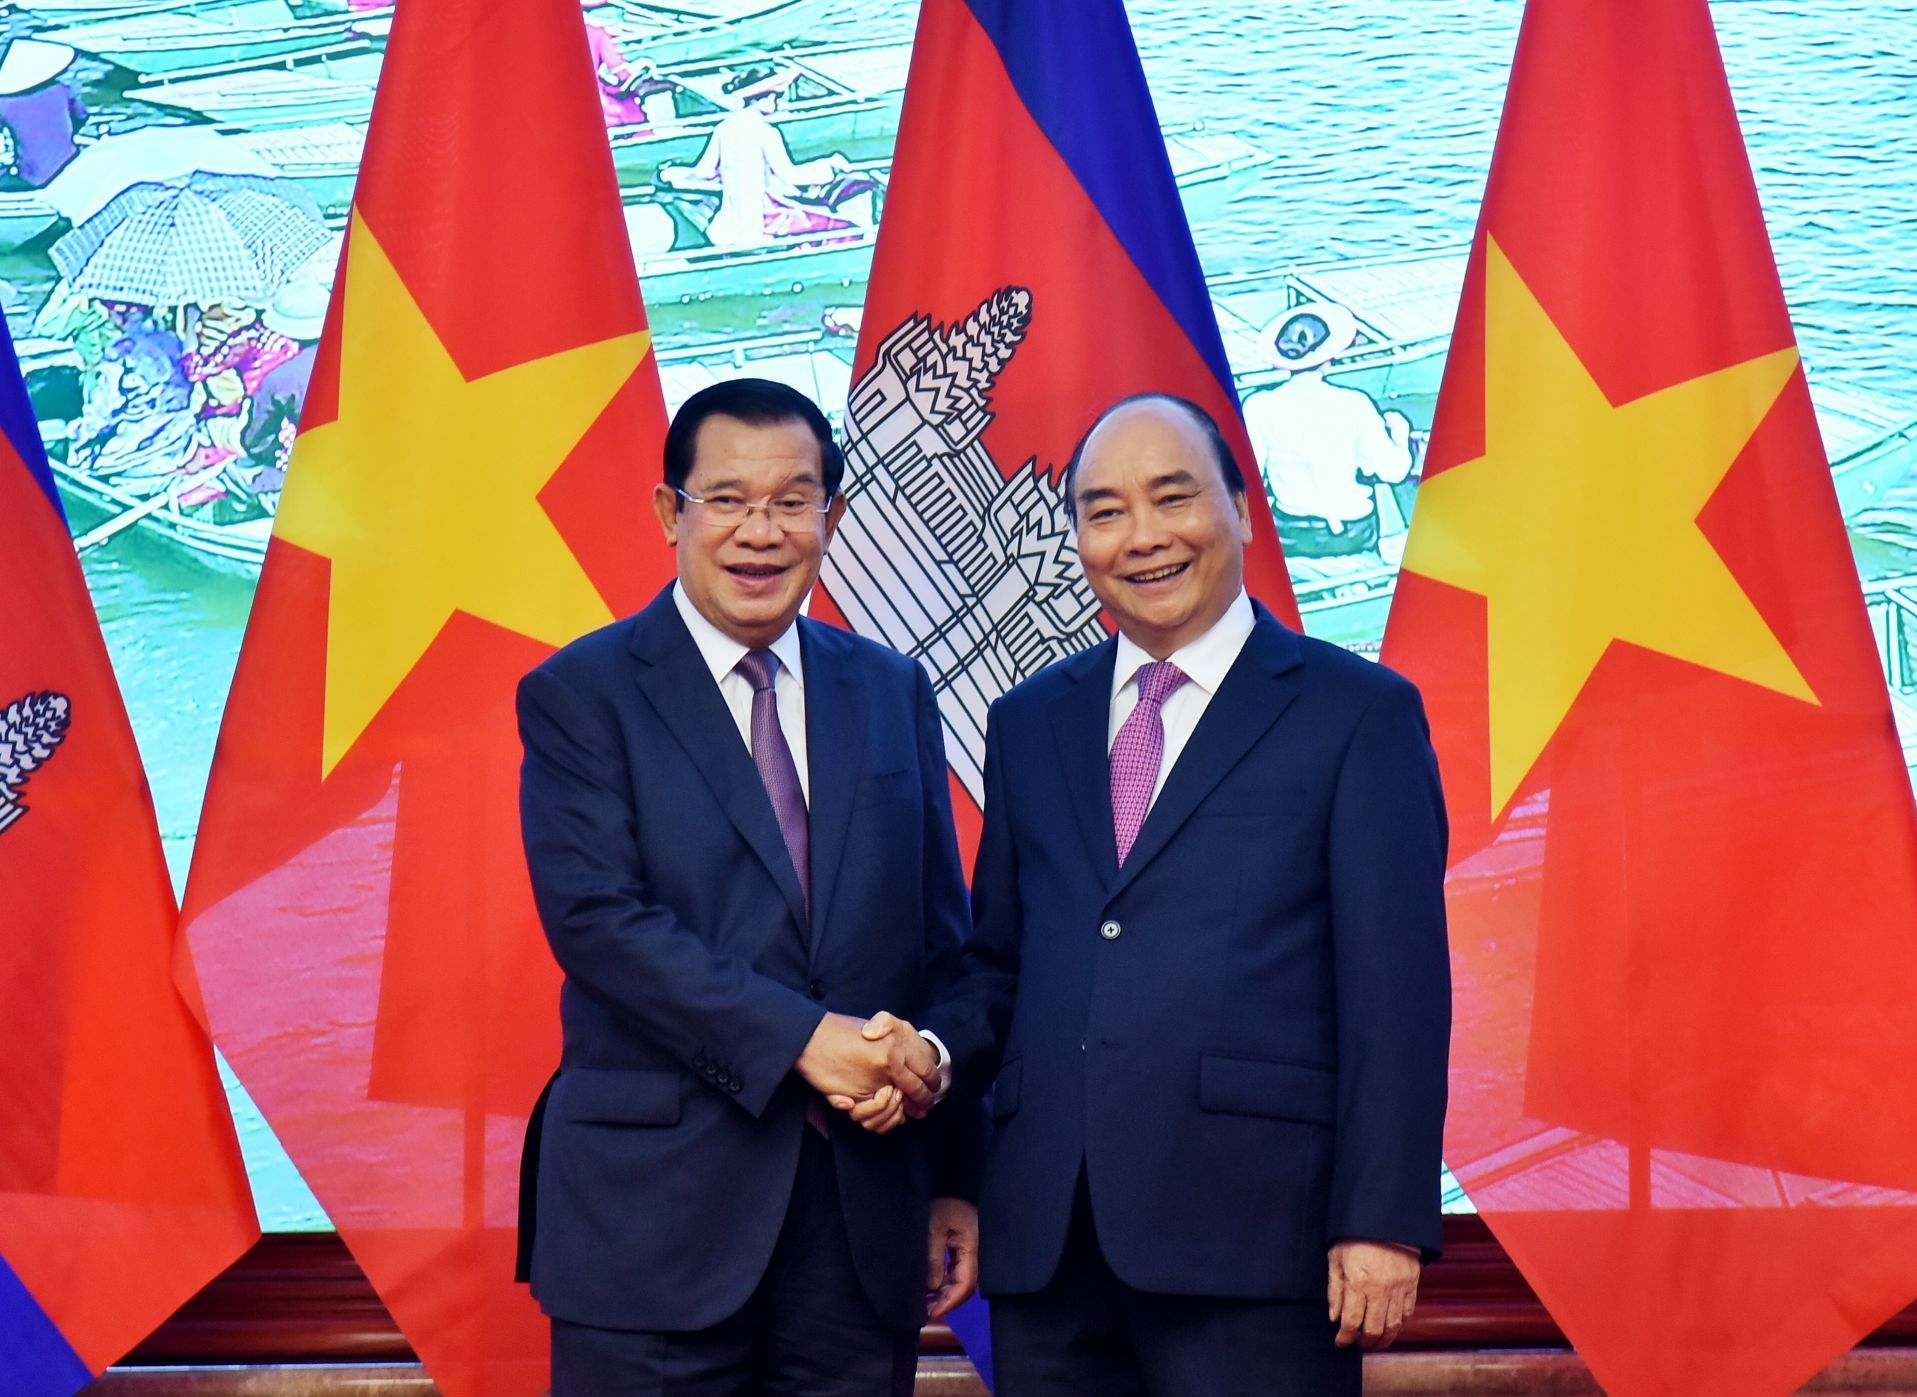 Tuyên bố chung Việt Nam - Campuchia: Tuyên bố chung giữa Việt Nam và Campuchia được ký kết tại Hội nghị thượng đỉnh ASEAN 2024, tạo ra một bước ngoặt mới trong quan hệ giữa hai quốc gia. Bằng việc ký kết tuyên bố này, hai quốc gia cam kết sẽ tăng cường hợp tác trong nhiều lĩnh vực khác nhau, từ kinh tế đến an ninh và ngoại giao. Điều này sẽ mang lại nhiều tiềm năng và cơ hội hợp tác tiềm năng giữa các doanh nghiệp ở hai nước.